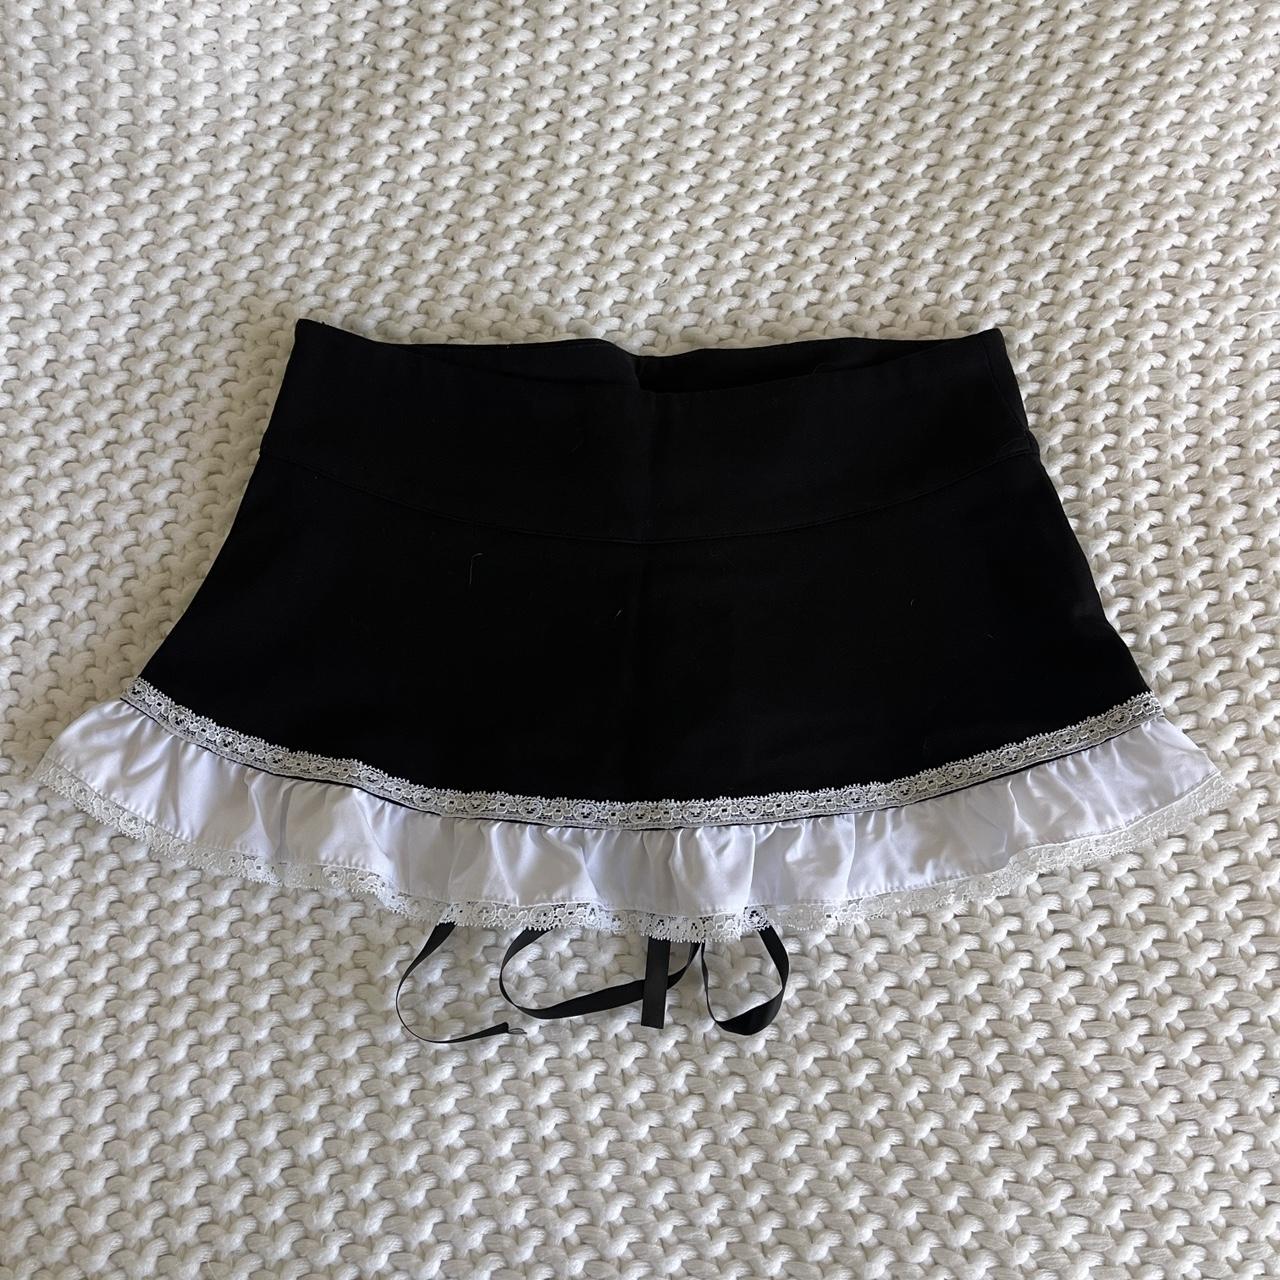 DollsKill Lace-Up Micro Mini Skirt. ️ So cute! Best... - Depop